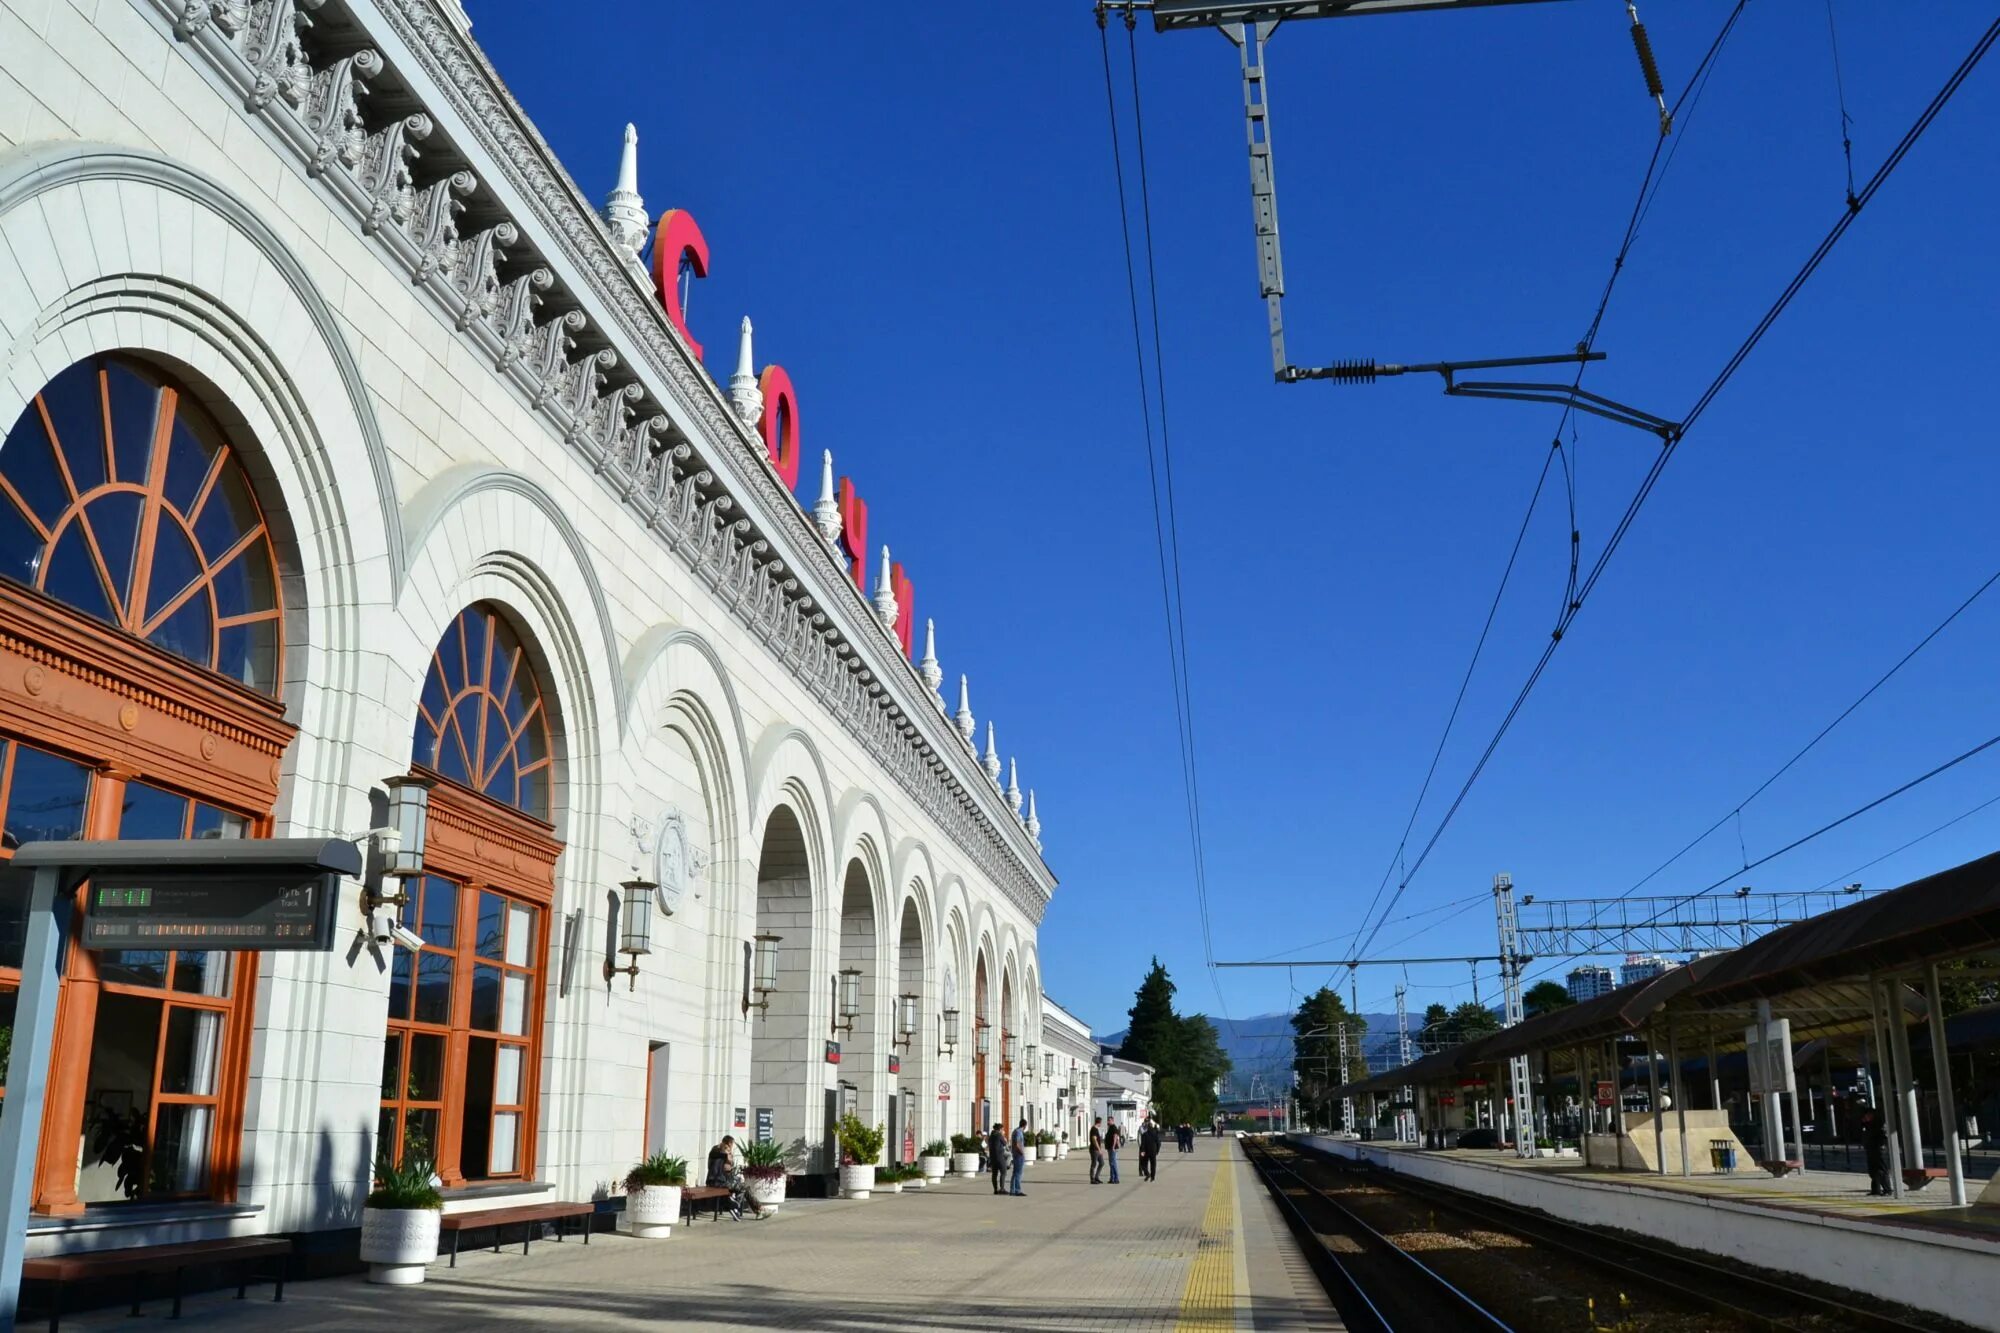 Ж/Д вокзал Сочи. Железнодорожная станция Сочи. Сочи ЖД вокзал перрон. Железнодорожный вокзал Сочи, Сочи.